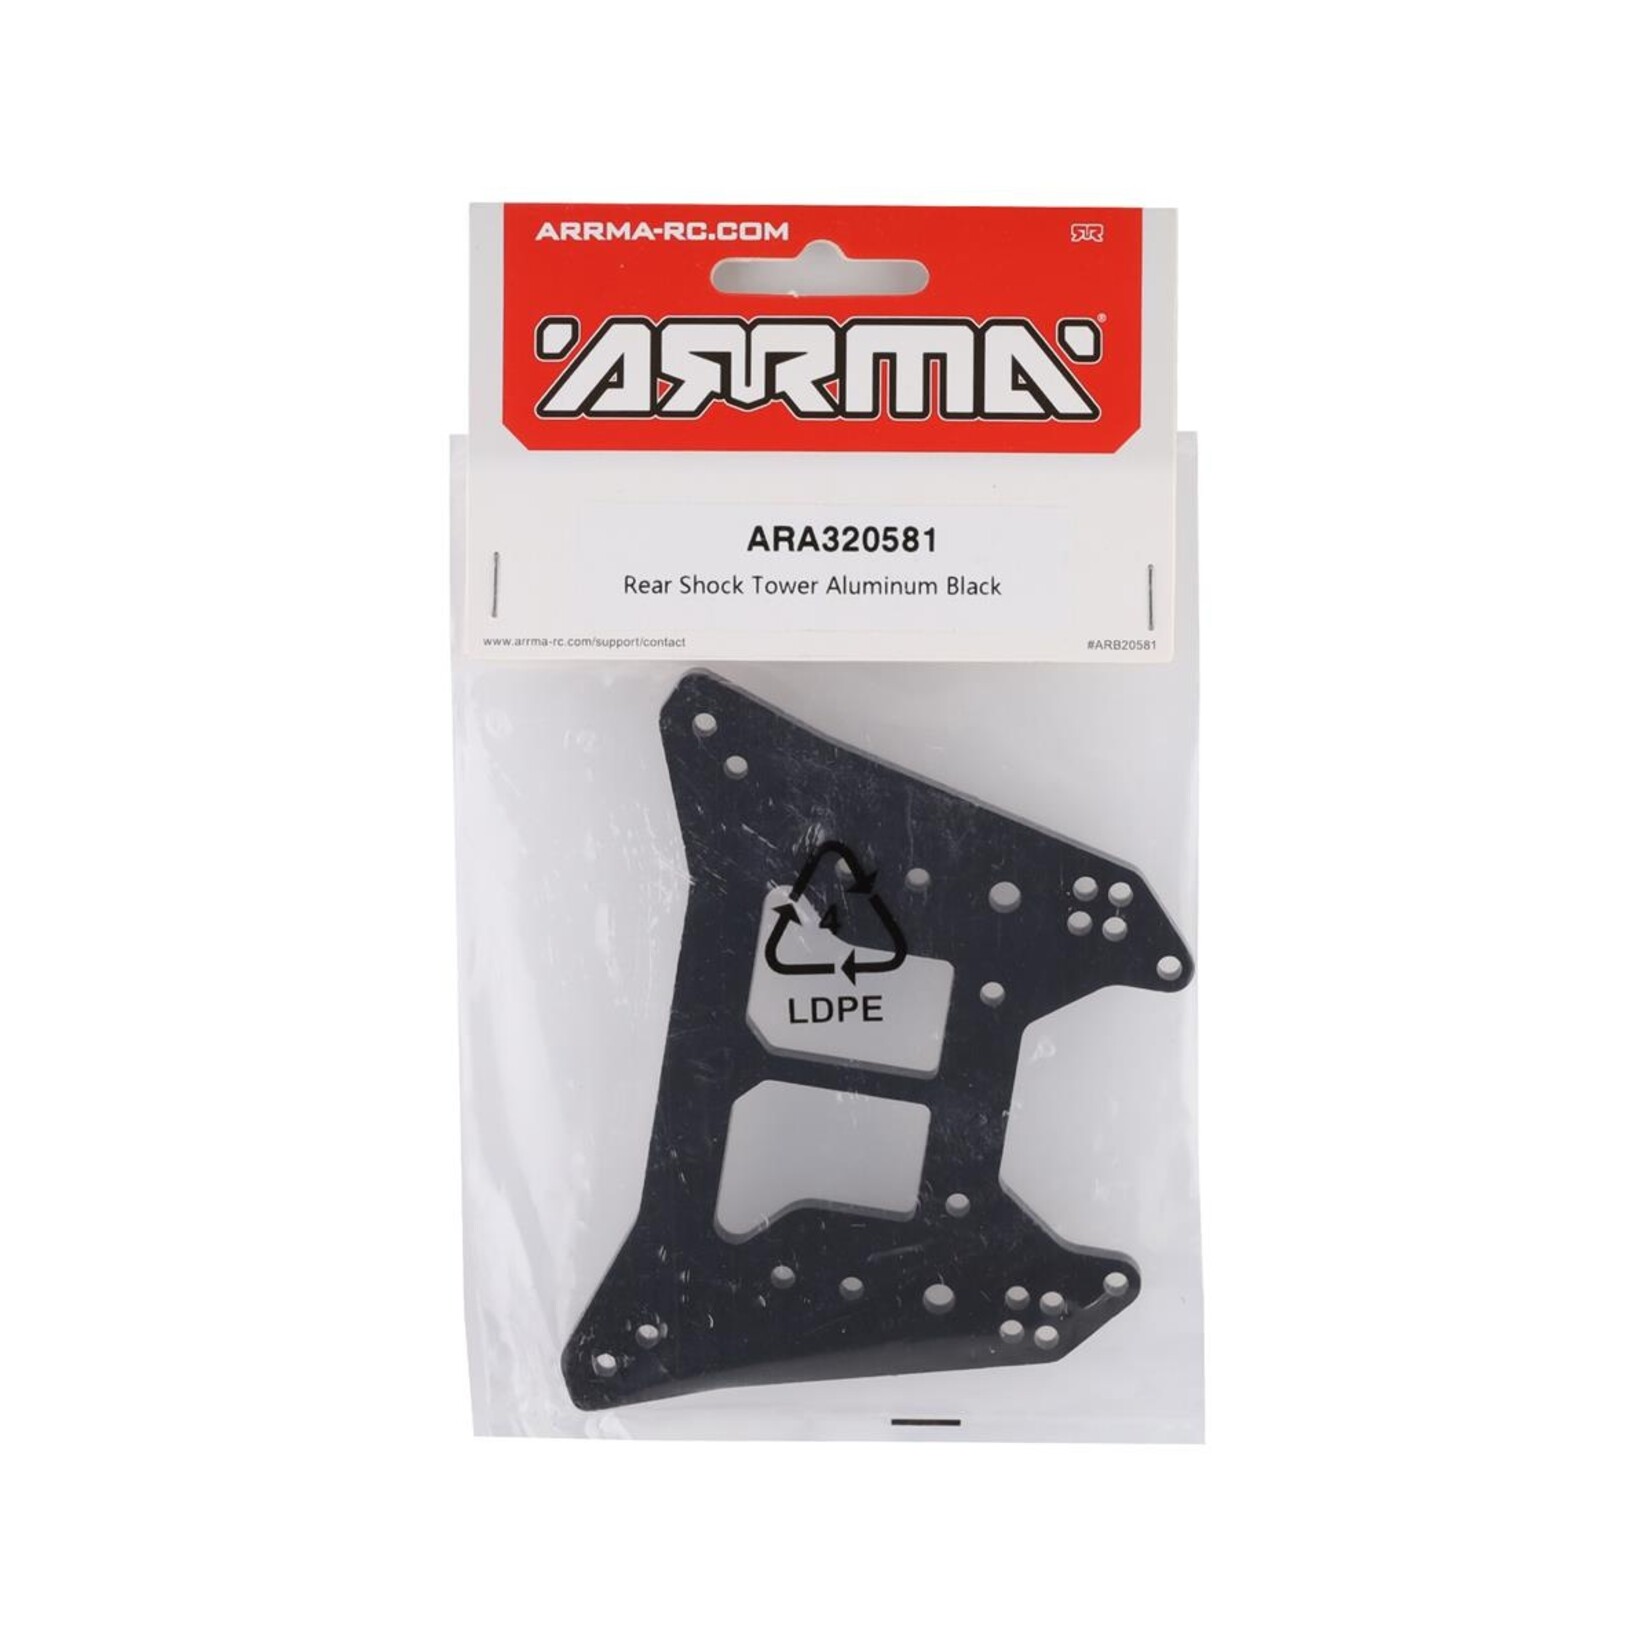 ARRMA Arrma Aluminum Rear Shock Tower (Black) #ARA320581